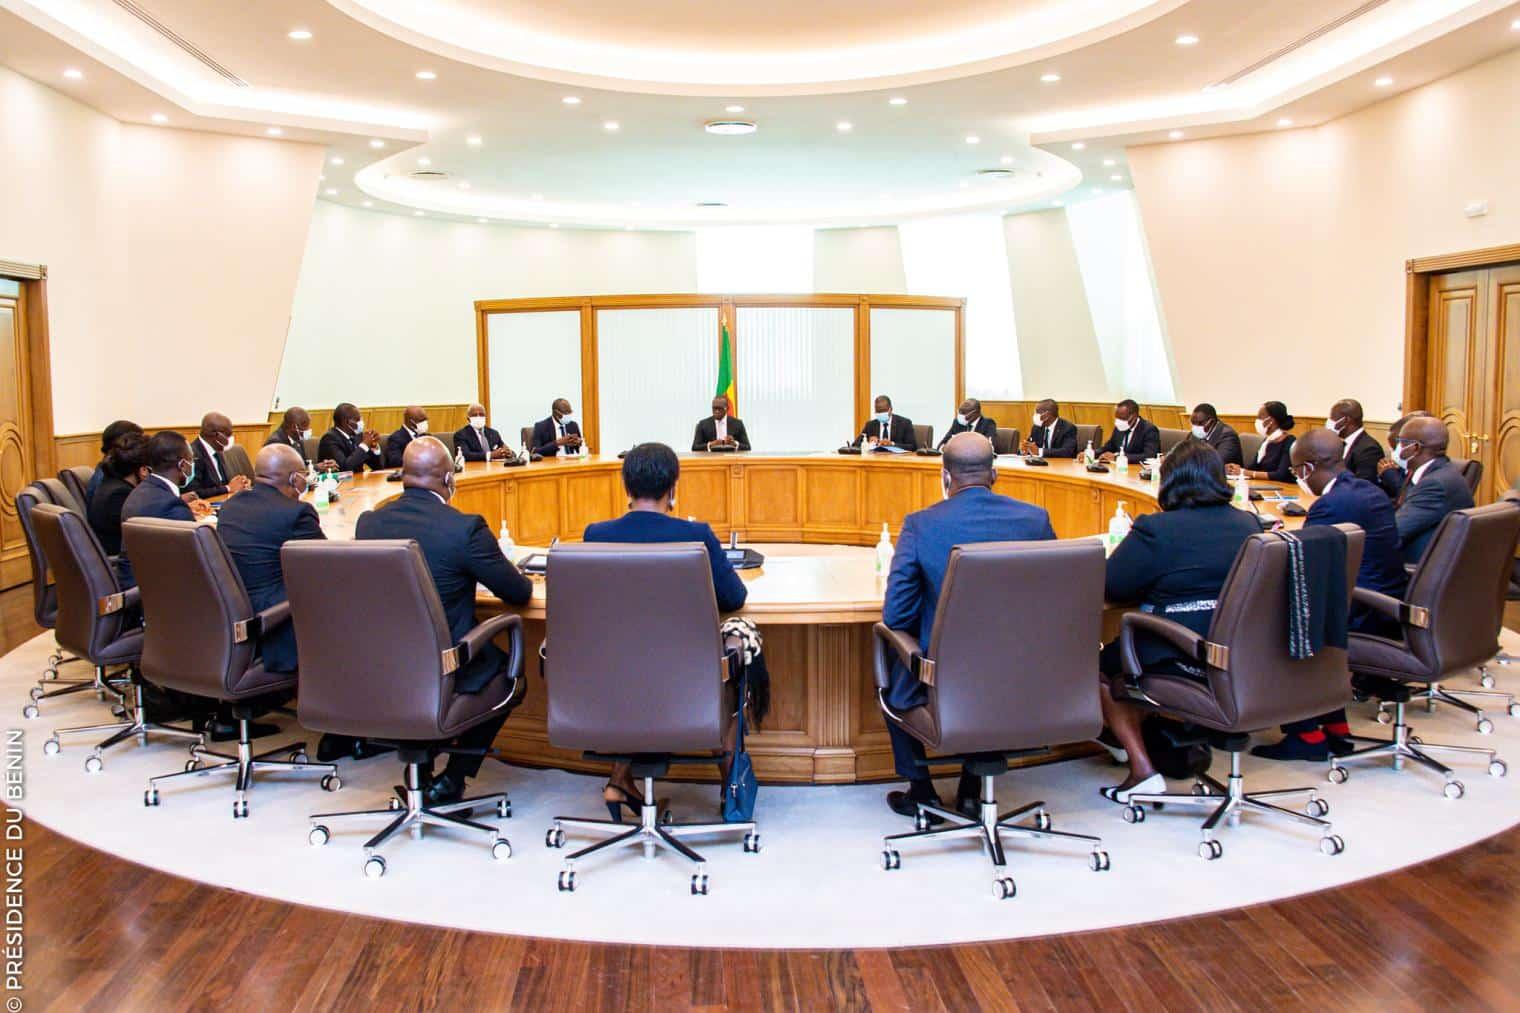 Bénin: les grandes décisions du Conseil des ministres du 25 janvier 2023